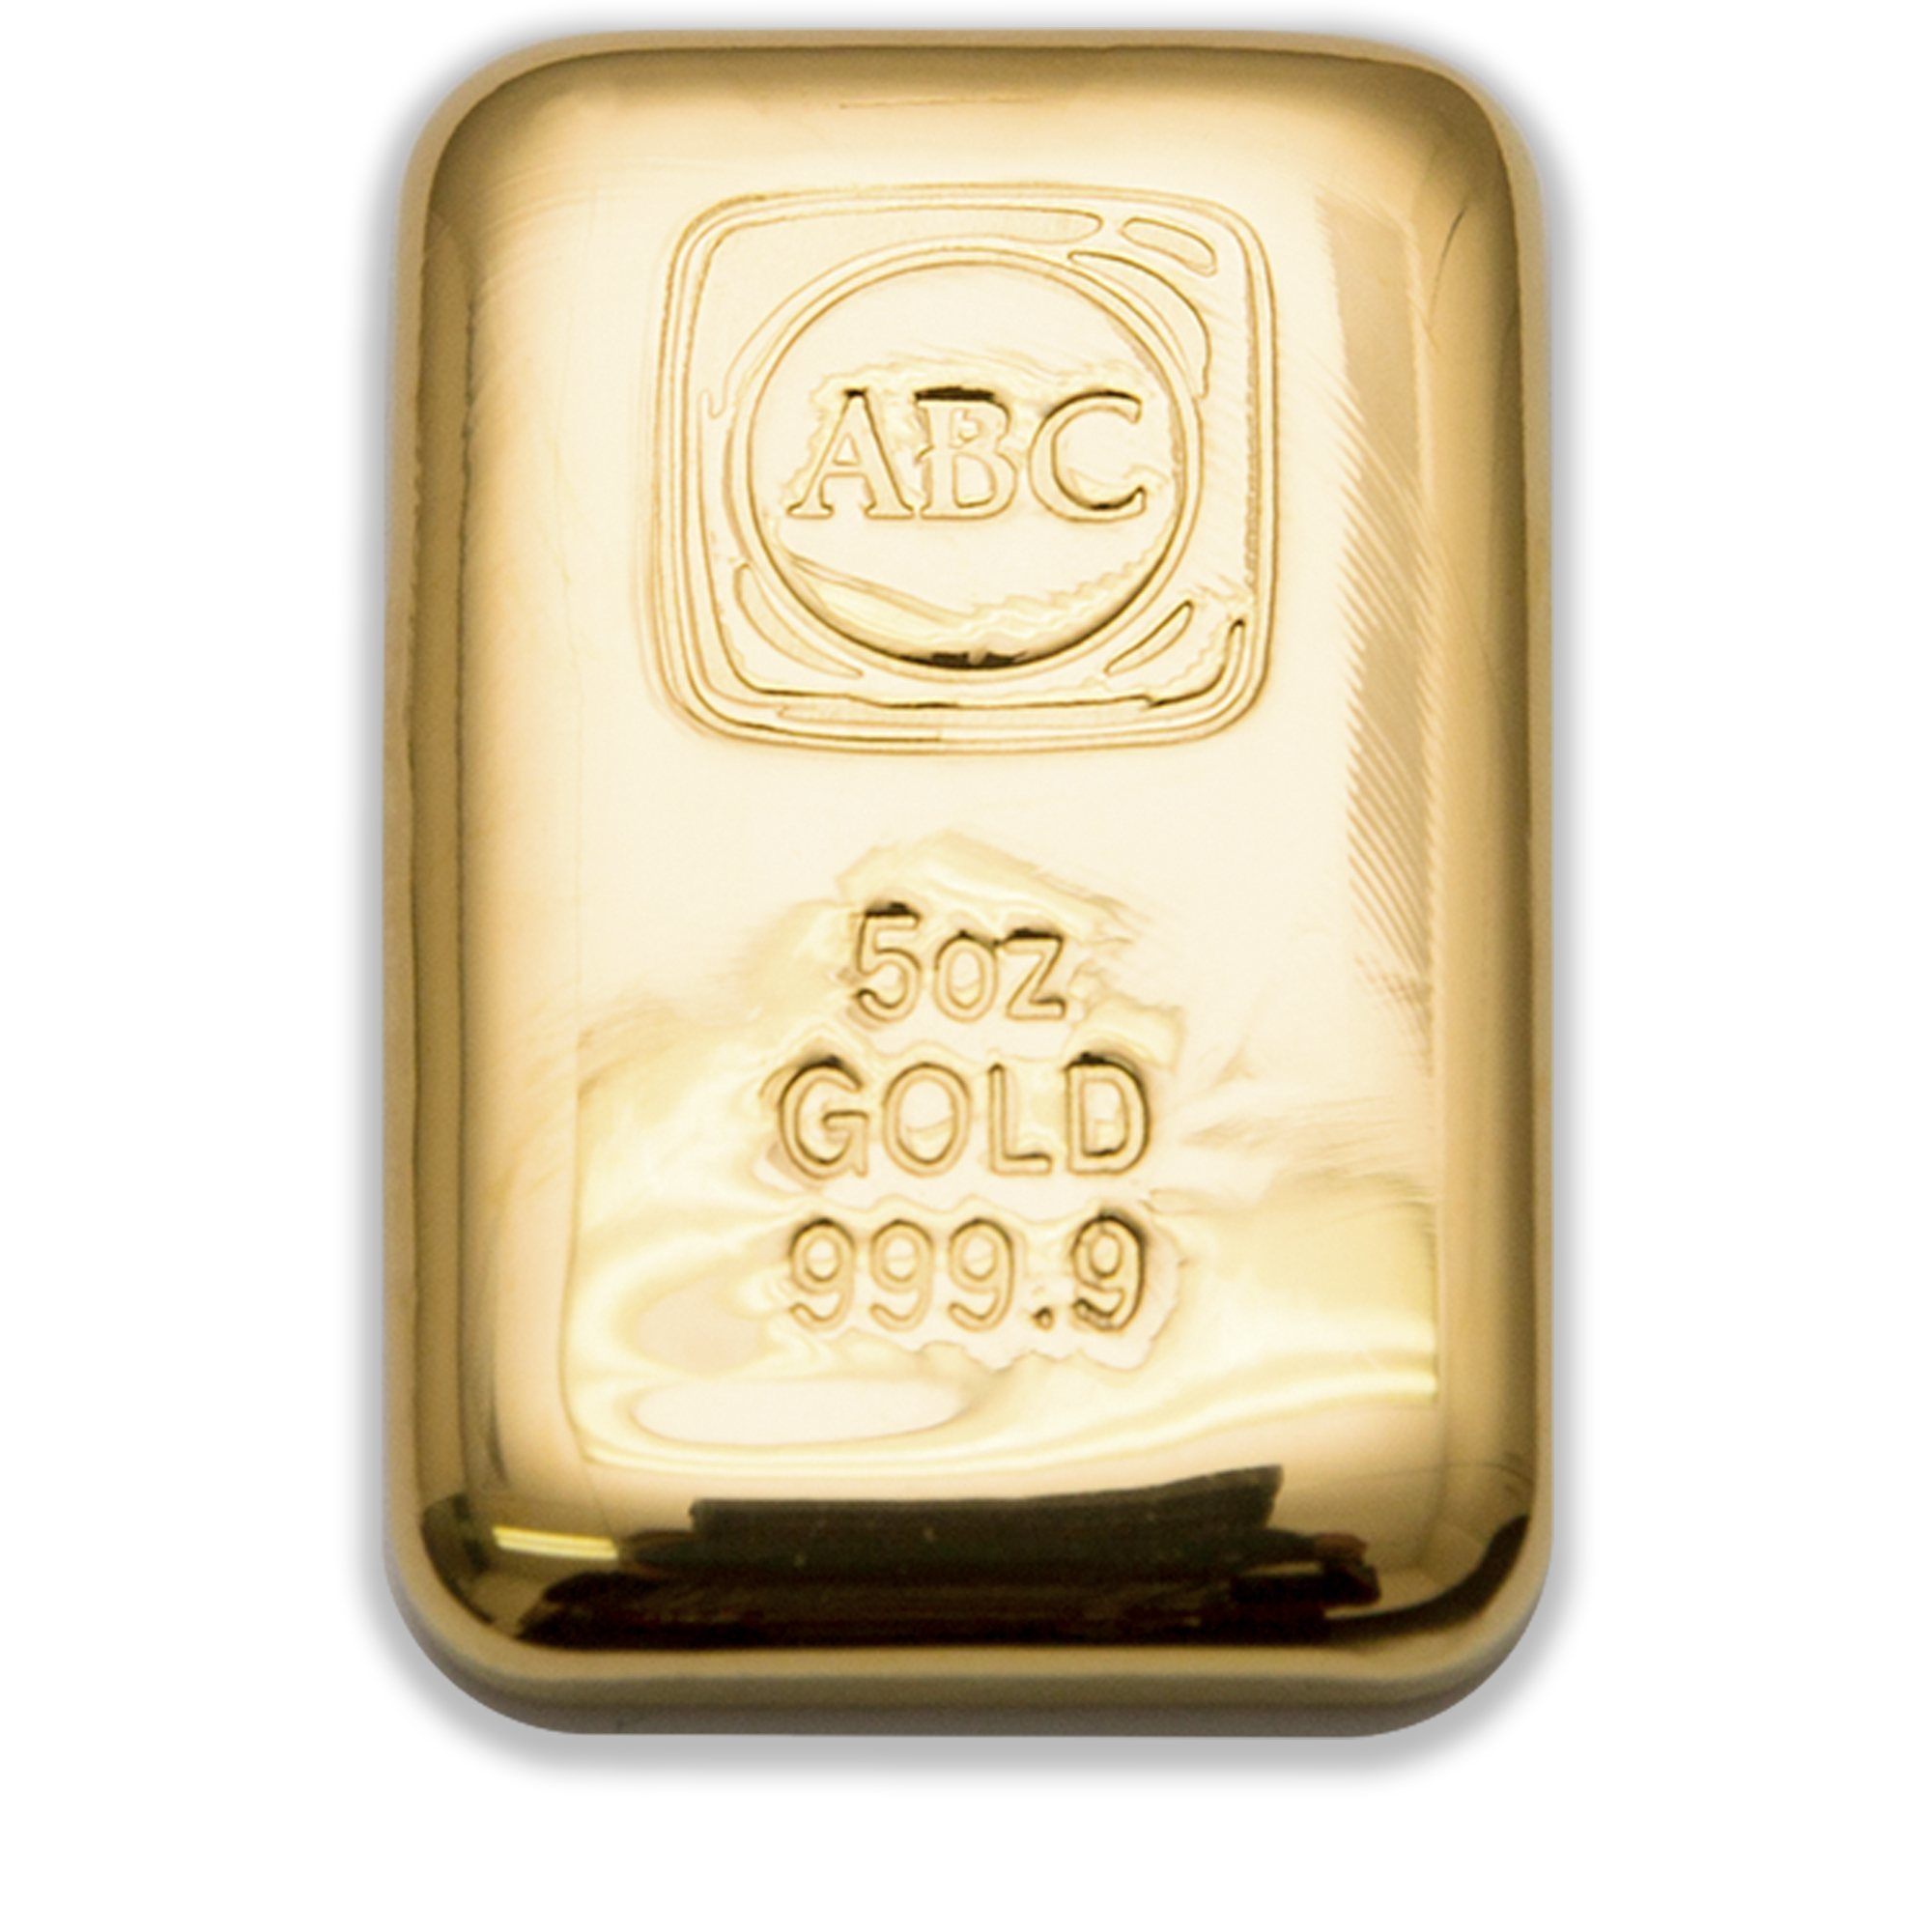 5oz ABC Gold Cast Bar